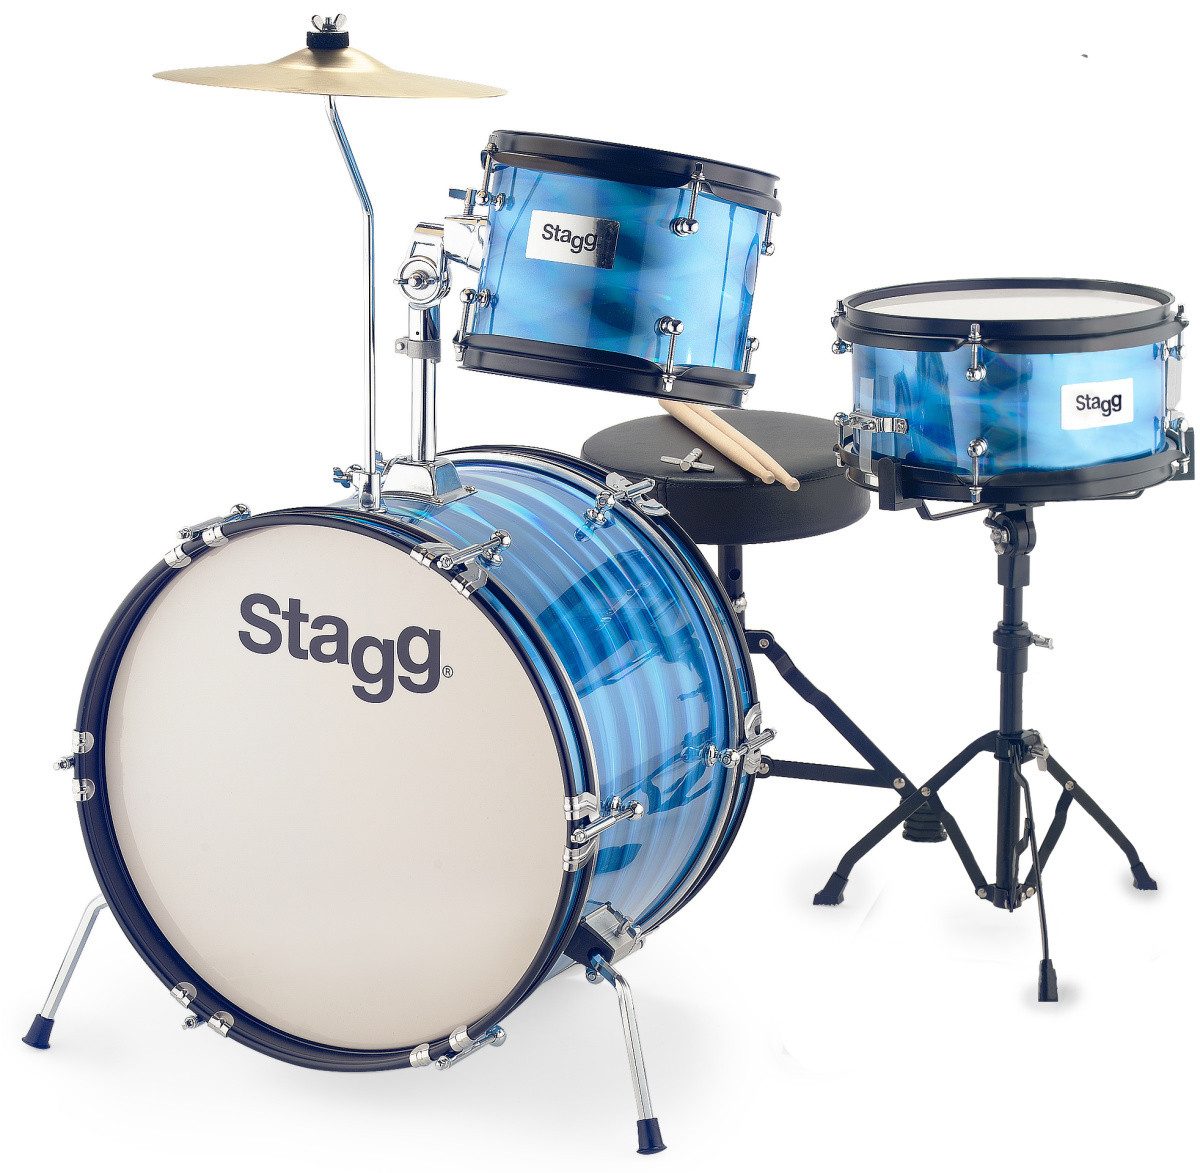 Stagg Schlagzeug 3-teiliges Junior Drumset mit Hardware, 8" / 10" / 16", Blau